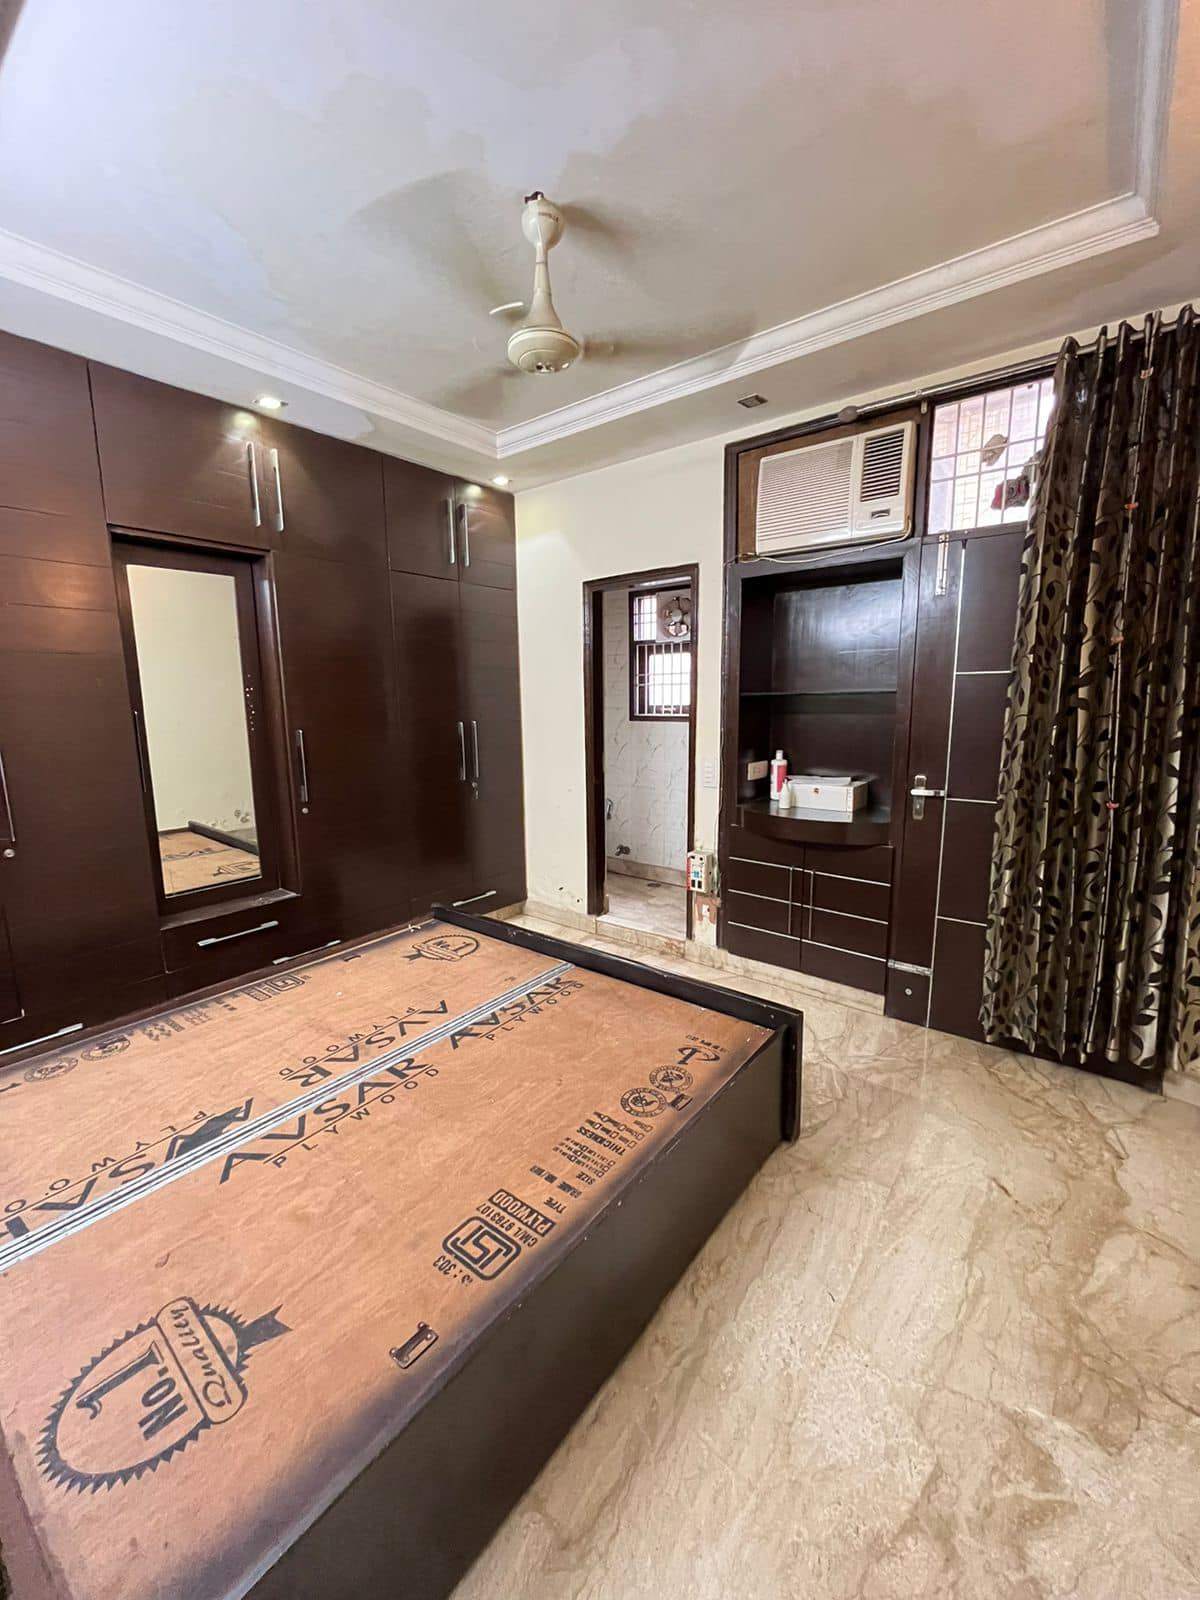 2 Bed/ 2 Bath Rent Apartment/ Flat; 900 sq. ft. carpet area, Furnished for rent @Kalkaji New Delhi